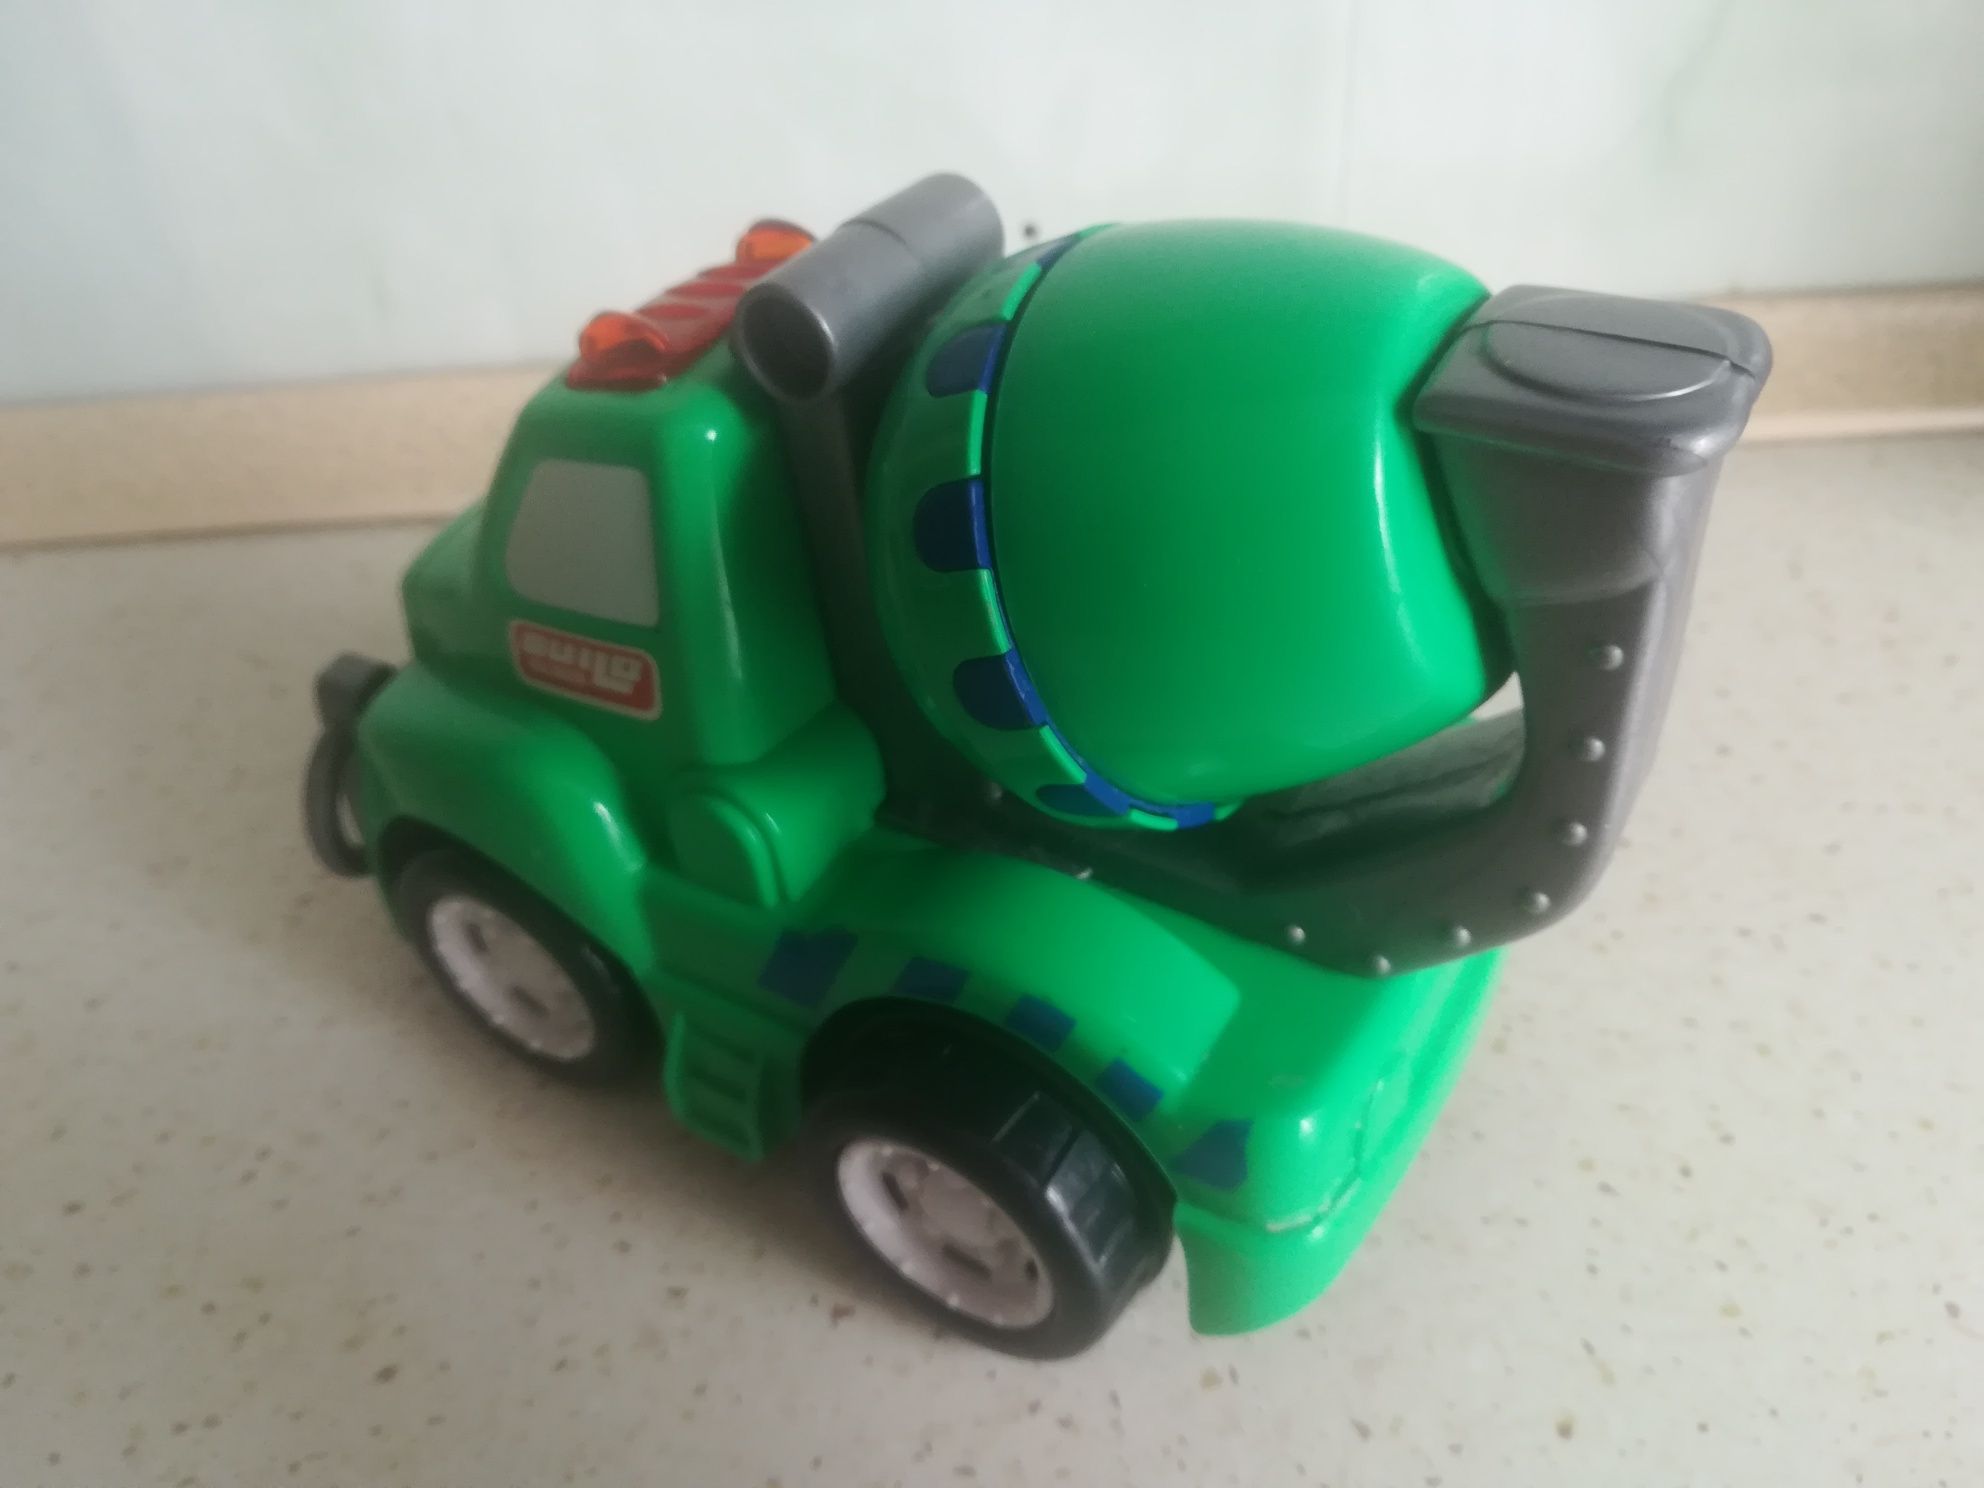 Samochód betoniarka zabawka dla chłopca